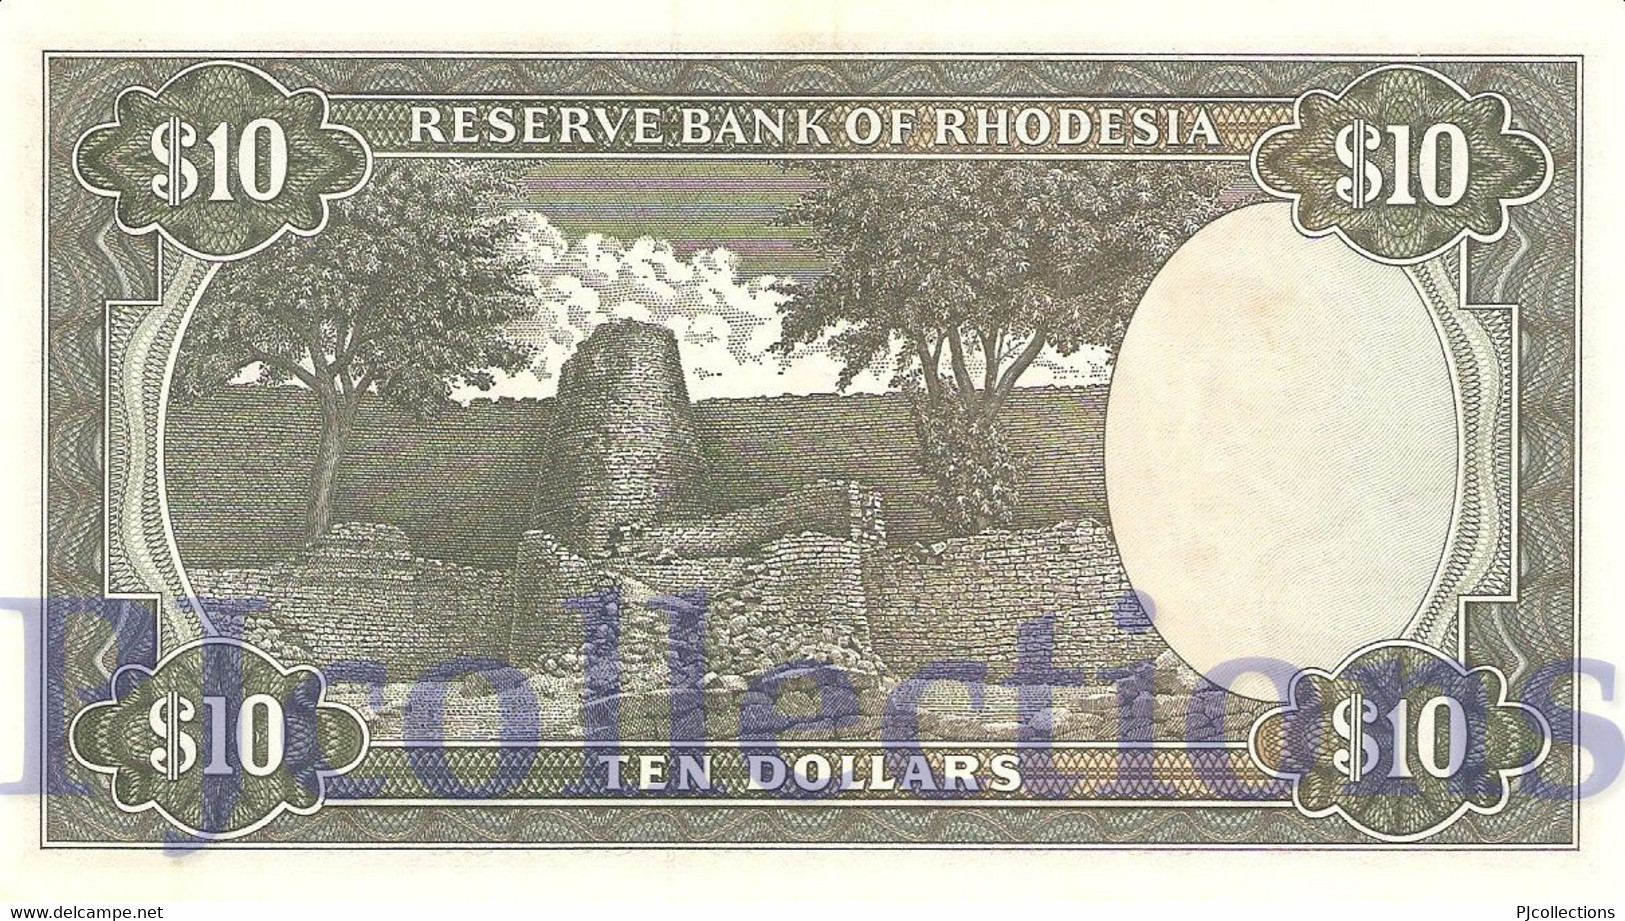 RHODESIA 10 DOLLARS 1975 PICK 33g AU - Rhodesien